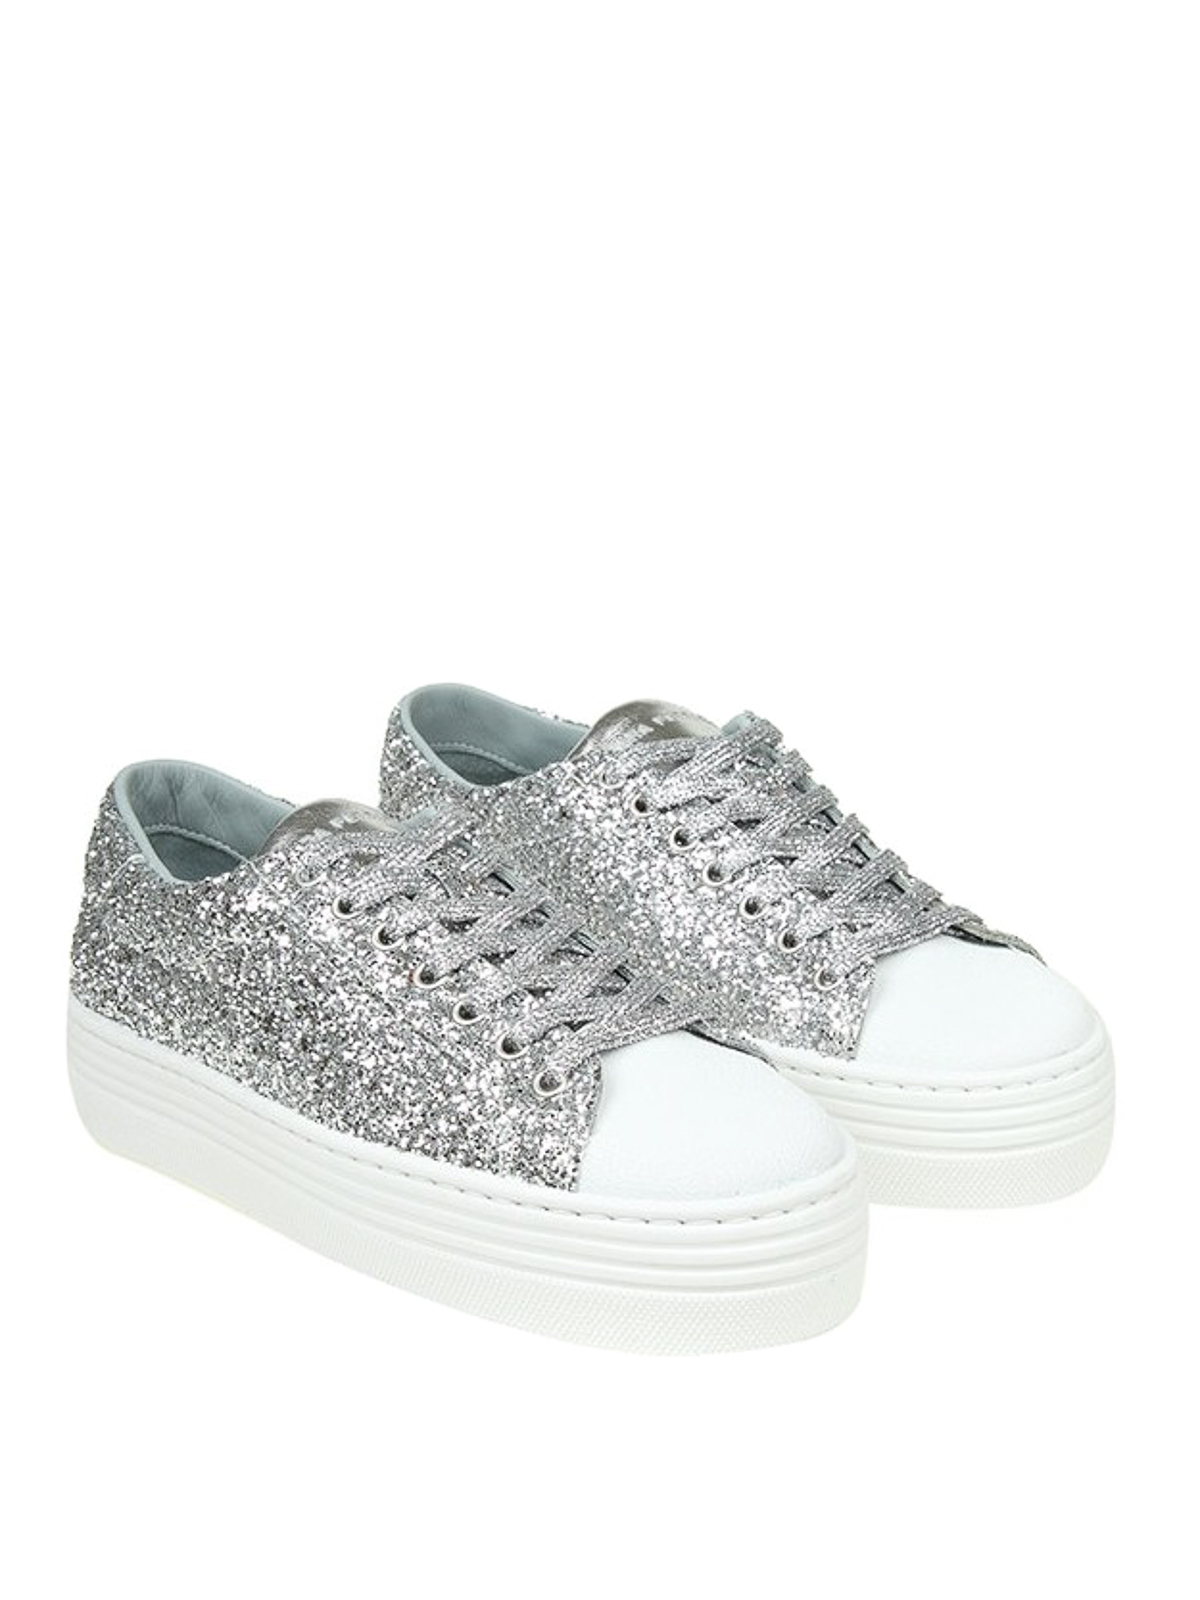 Platform silver glitter sneakers 